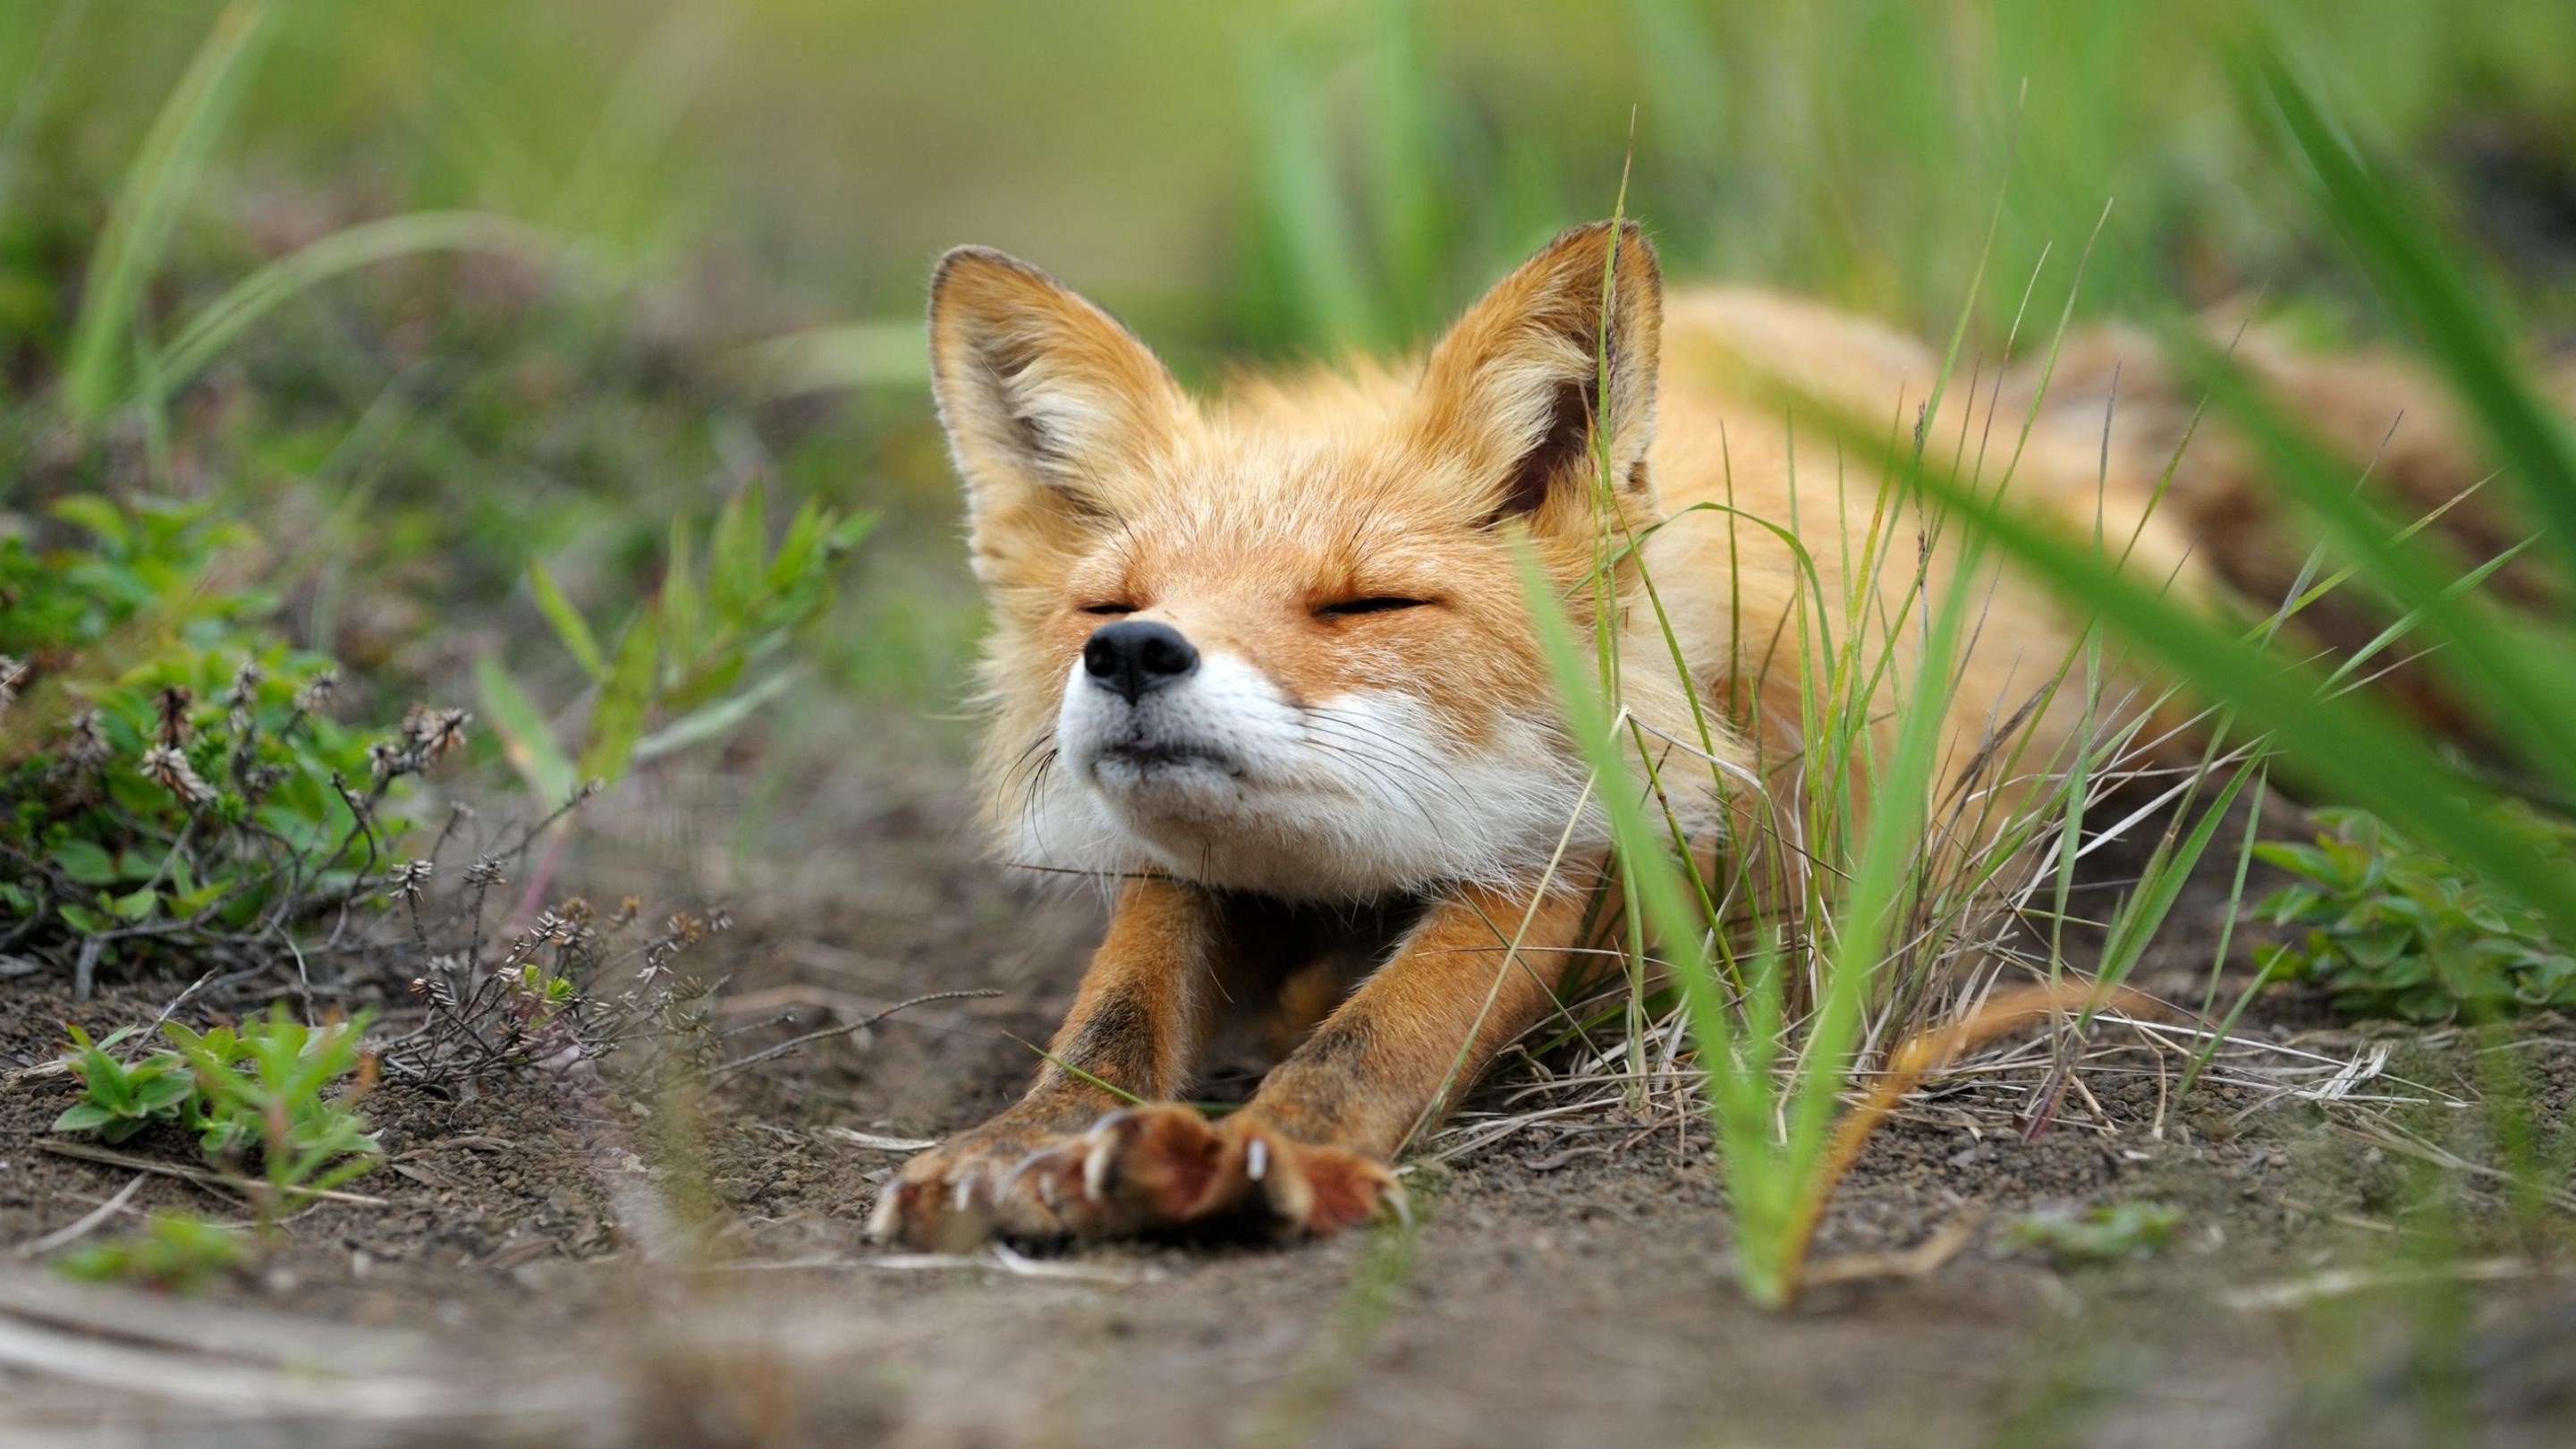 Затаивание лисицы в укромном месте перед нападением. Лисьи потягушки. Милая лиса. Природа и животные.